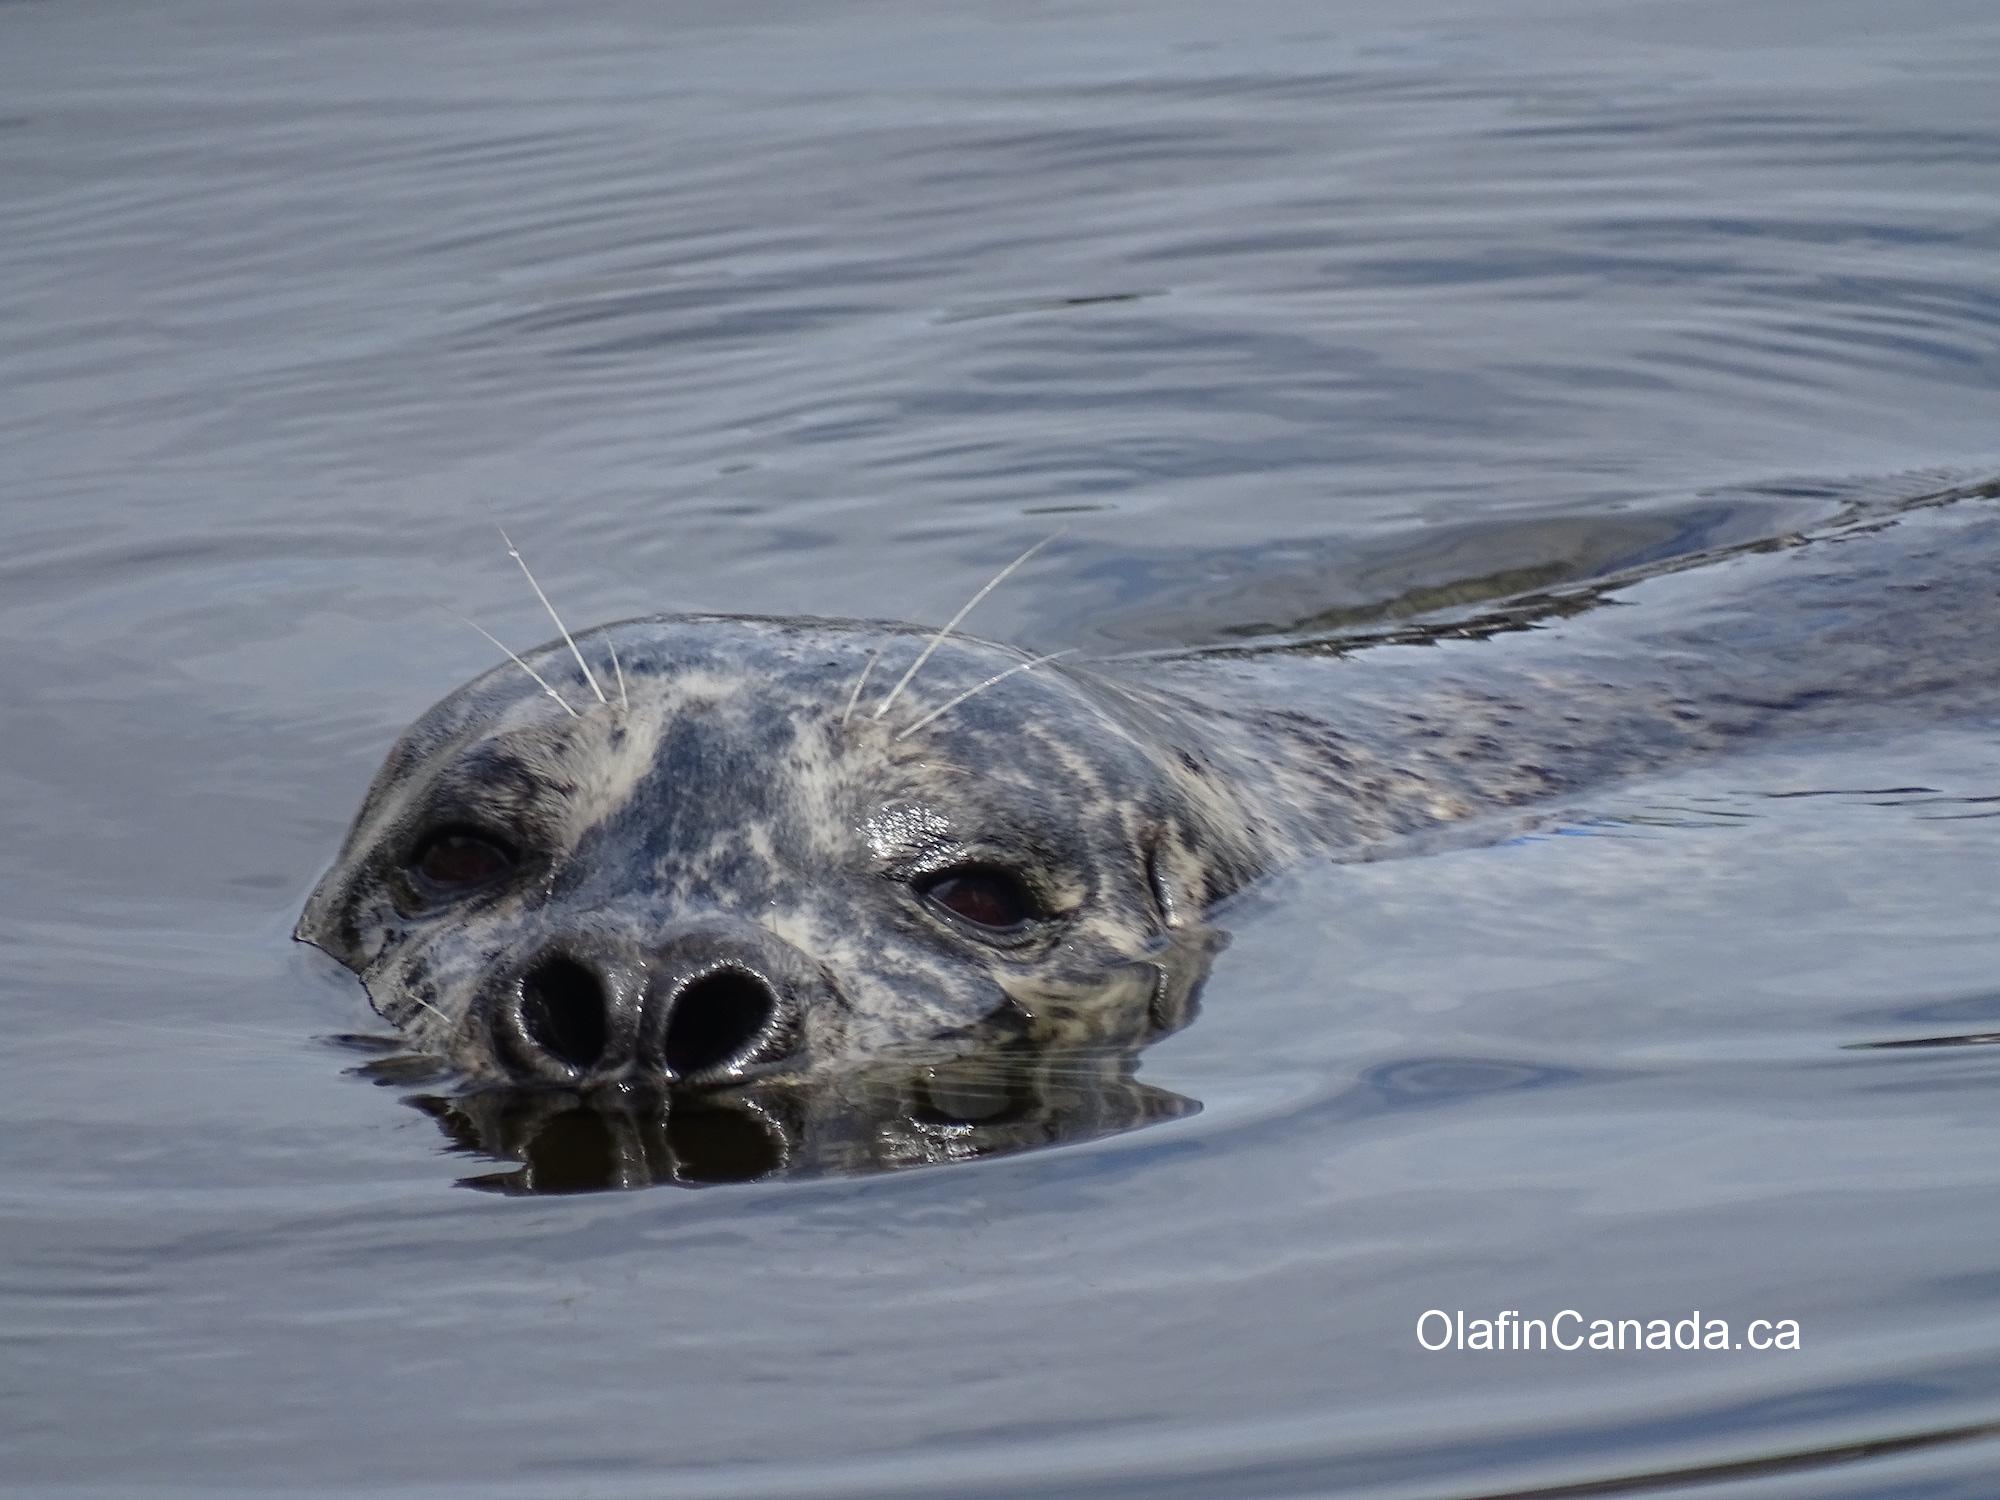 Curious seal at Victoria harbour #olafincanada #britishcolumbia #discoverbc #wildlife #victoria #seal